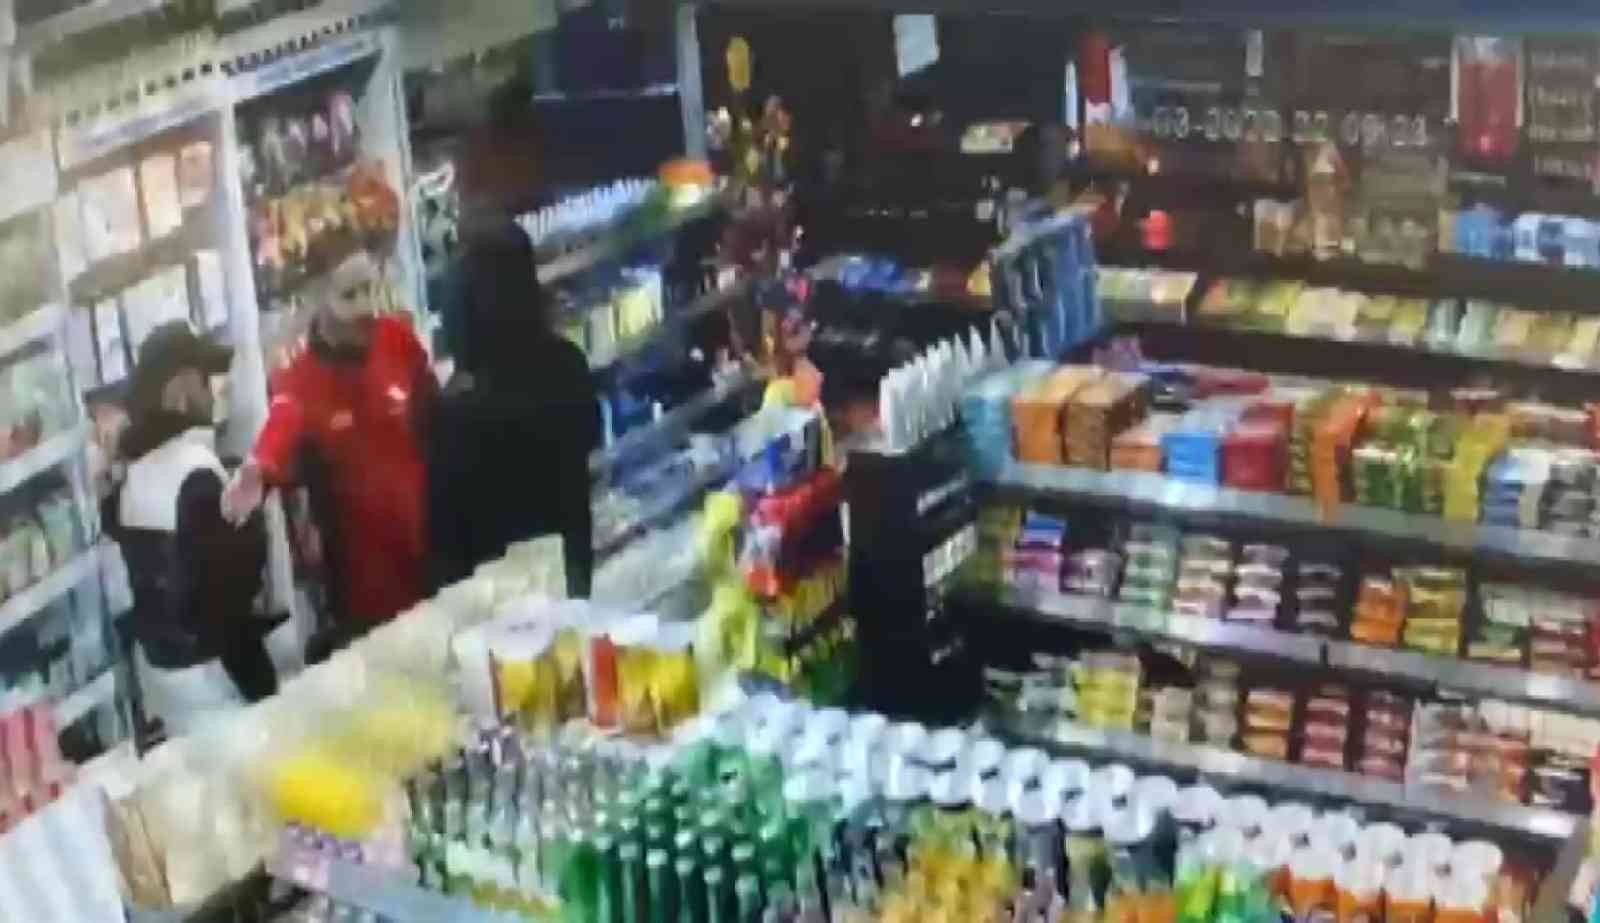 Maltepe’de bir benzin istasyonunun market kısmına gelen 2 kişiden biri çalışanı oyalarken diğeri de şarj aparatı çalmaya çalıştı. Görevlinin ...